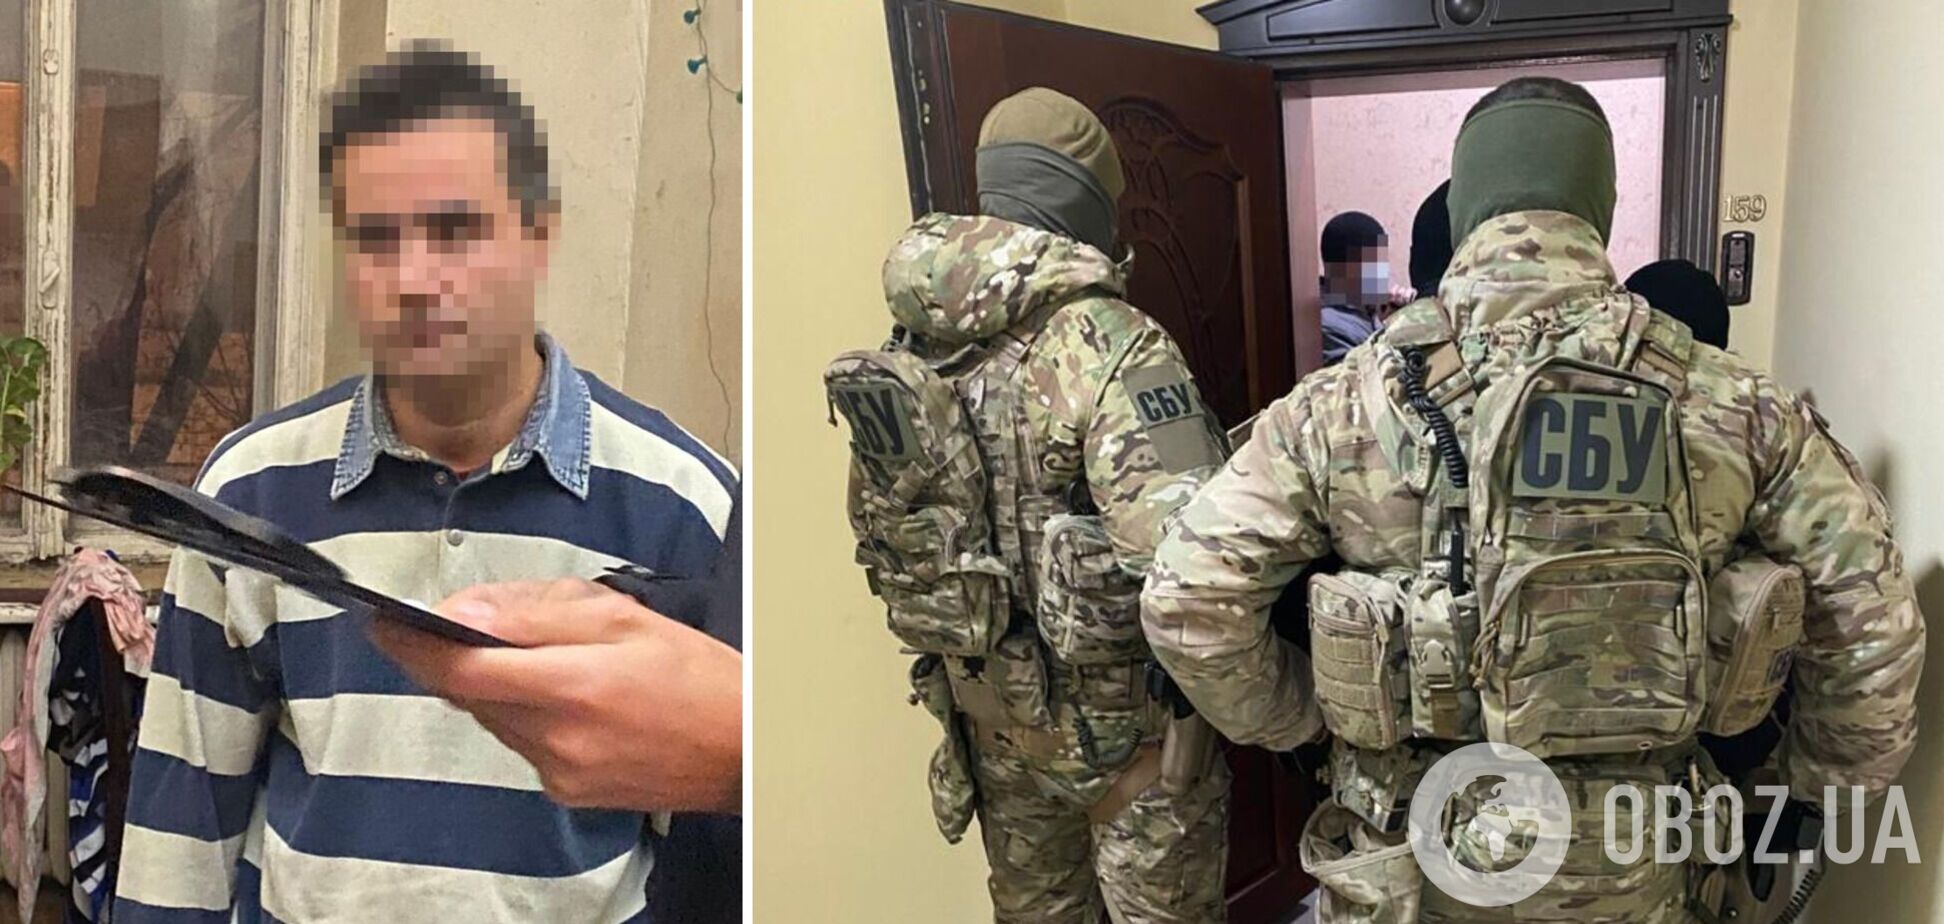 СБУ затримала в Одесі російського агента, який 'полював' за українськими комплексами 'Нептун' і шукав позиції ППО. Фото